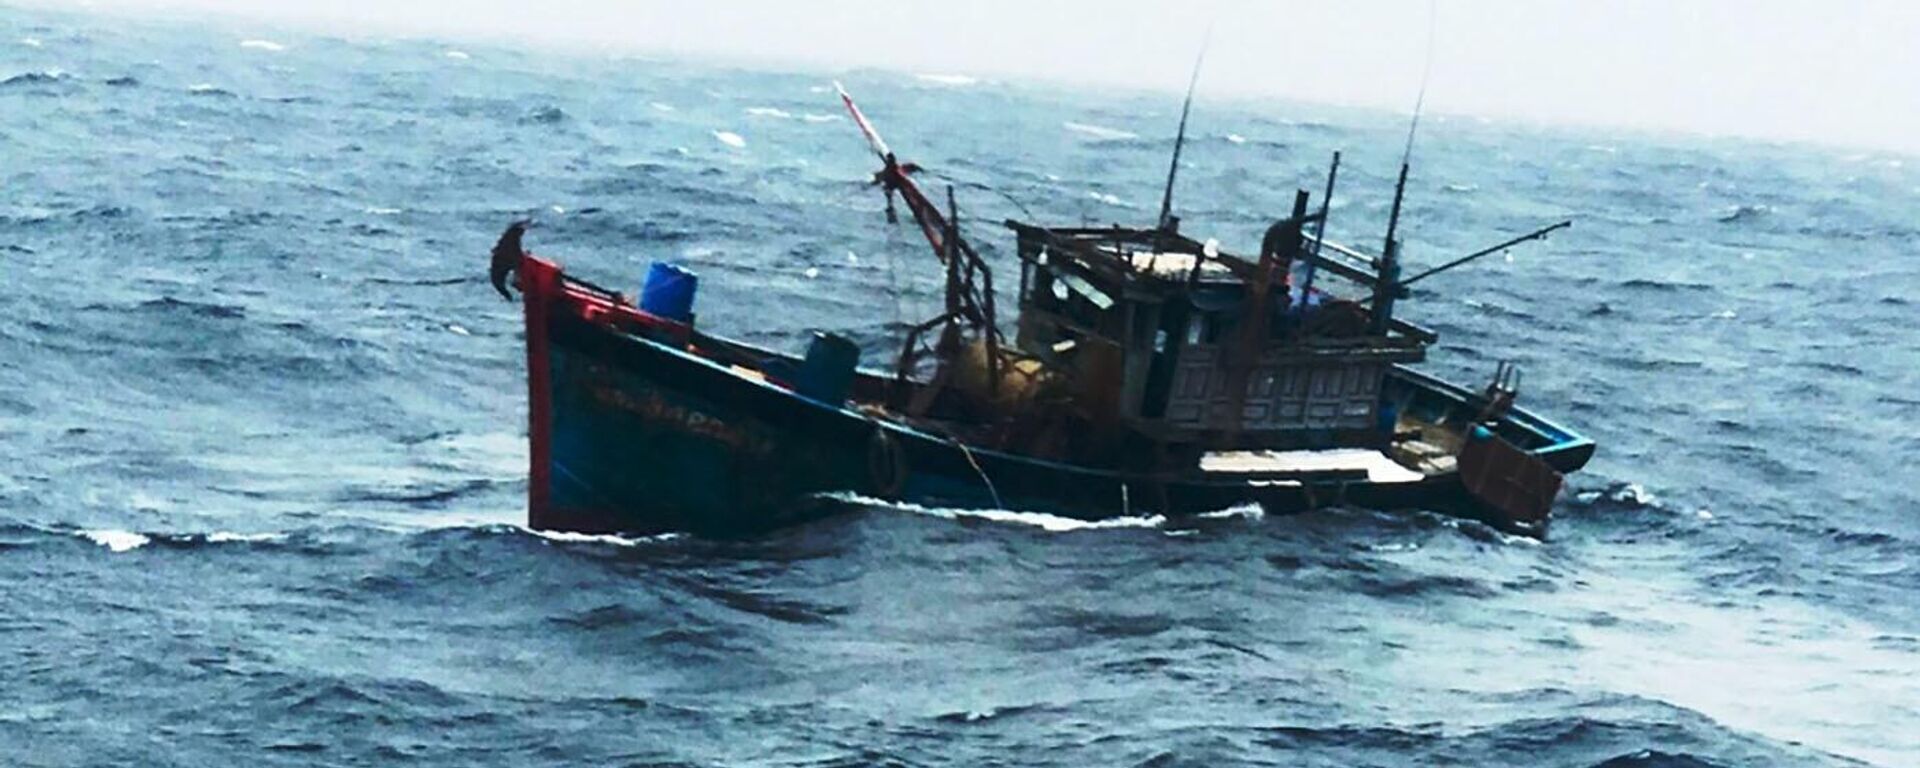 Tàu cá tàu QNa 94898 TS cùng thuyền trưởng và 2 thuyền viên gặp nạn, chìm trên biển. - Sputnik Việt Nam, 1920, 02.01.2023